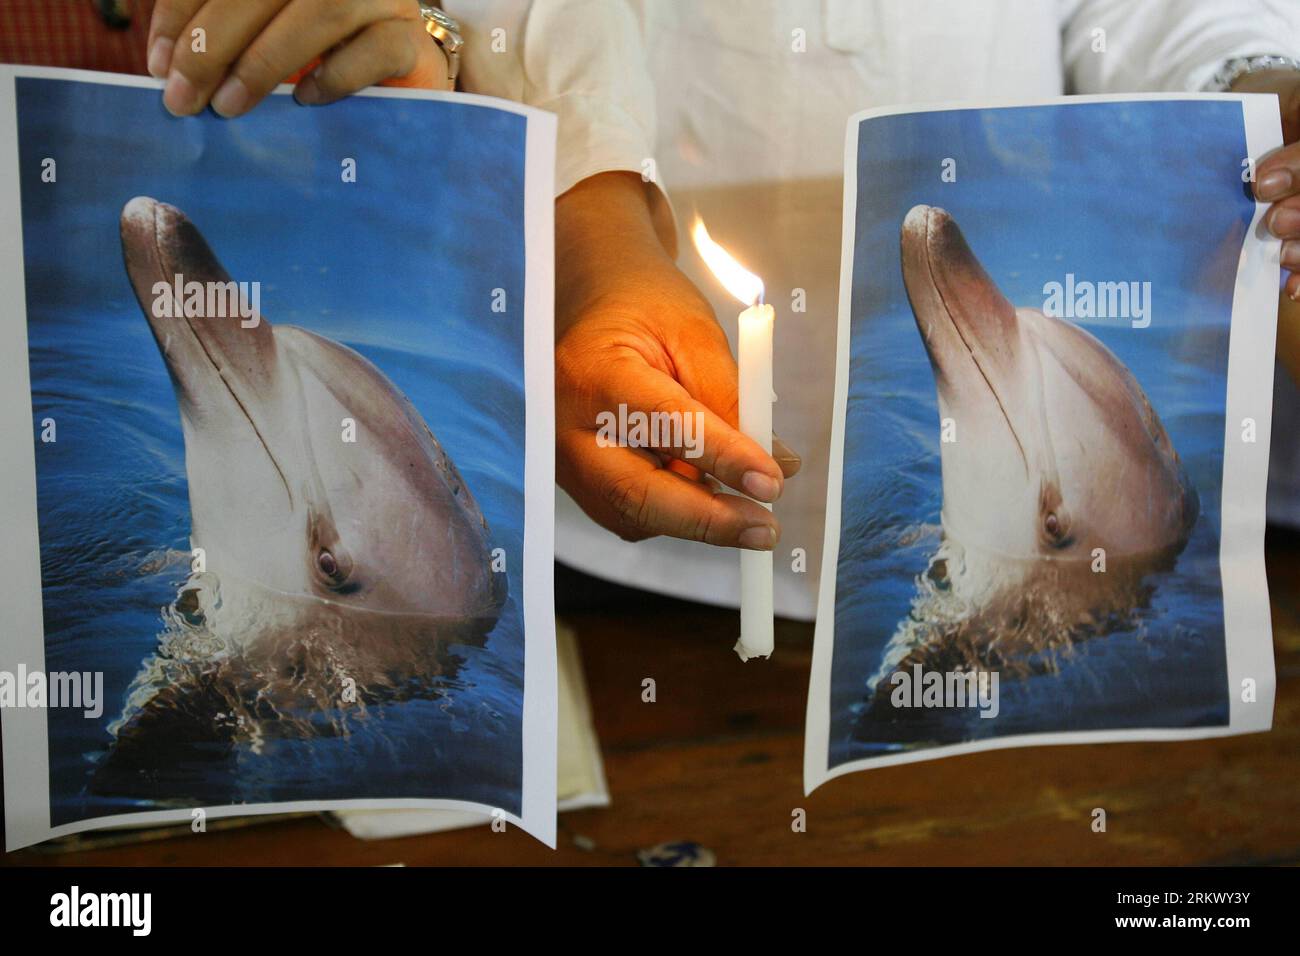 Bildnummer: 58803272 Datum: 26.11.2012 Copyright: imago/Xinhua (121126) -- MANILA, 26 novembre 2012 (Xinhua) -- ambientalisti e sostenitori del benessere animale tengono una candela accesa e foto di un delfino chiamato Wen Wen a Quezon City, Filippine, 26 novembre 2012. Il delfino maschio Wen Wen, uno dei delfini diretti al Marine Life Park presso il Resorts World Sentosa di Singapore, è morto durante il volo dalle Filippine il 22 novembre 2012. (Xinhua/Rouelle Umali)(dzl) FILIPPINE-QUEZON-DOLPHIN-DEATH PUBLICATIONxNOTxINxCHN Gesellschaft Tierschutz Kerze Delphin x0x xmb 2012 quer 58803272 Data 26 11 Foto Stock